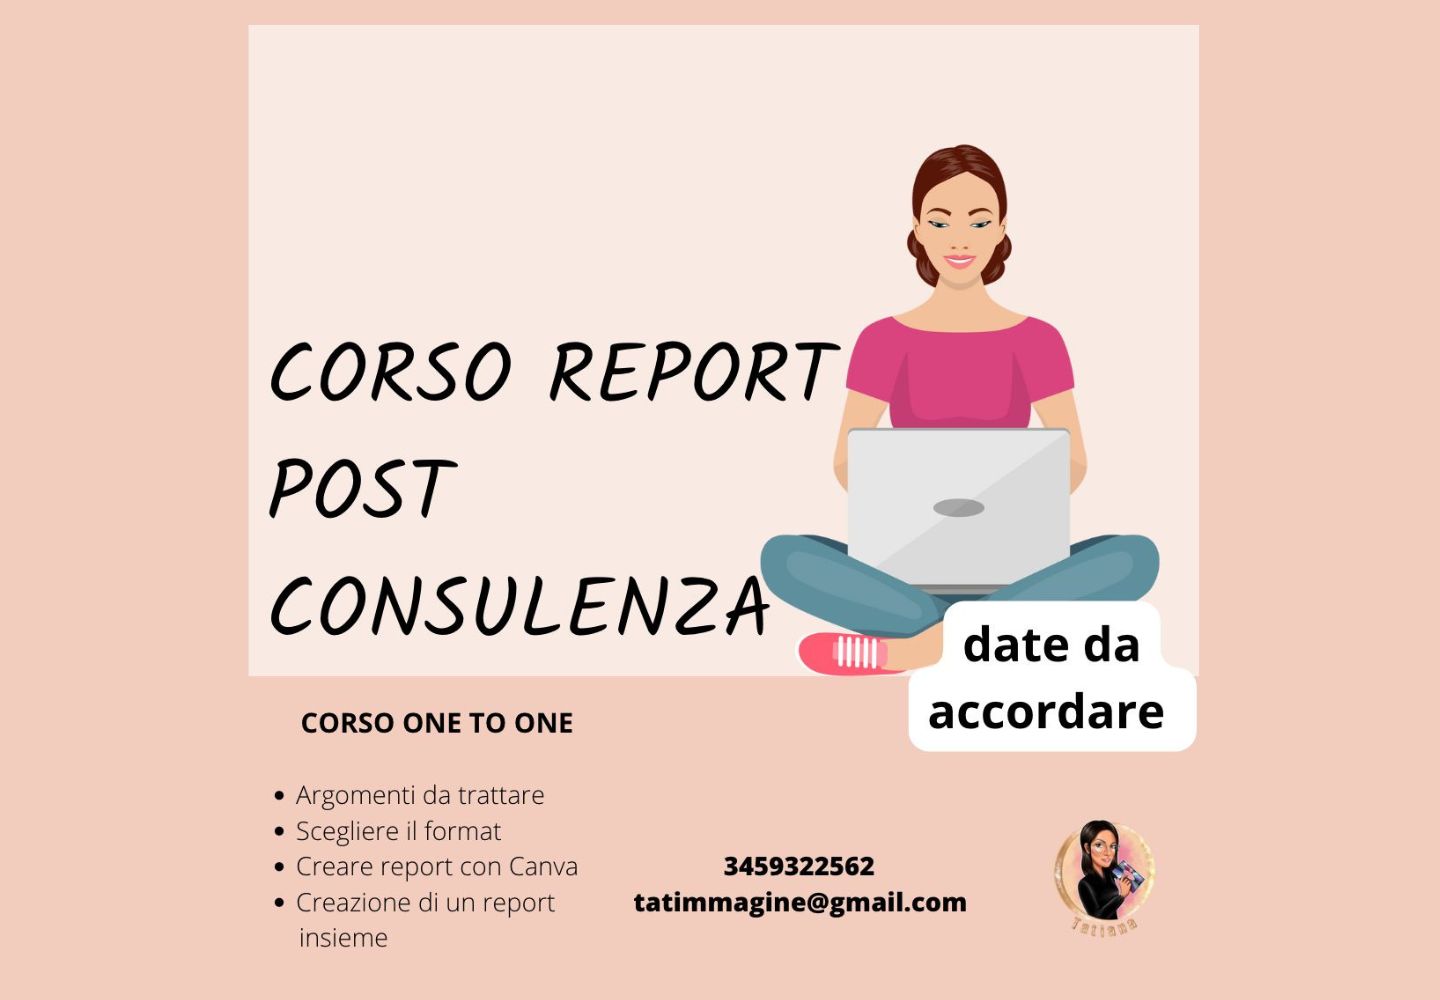 Corso Report post consulenza